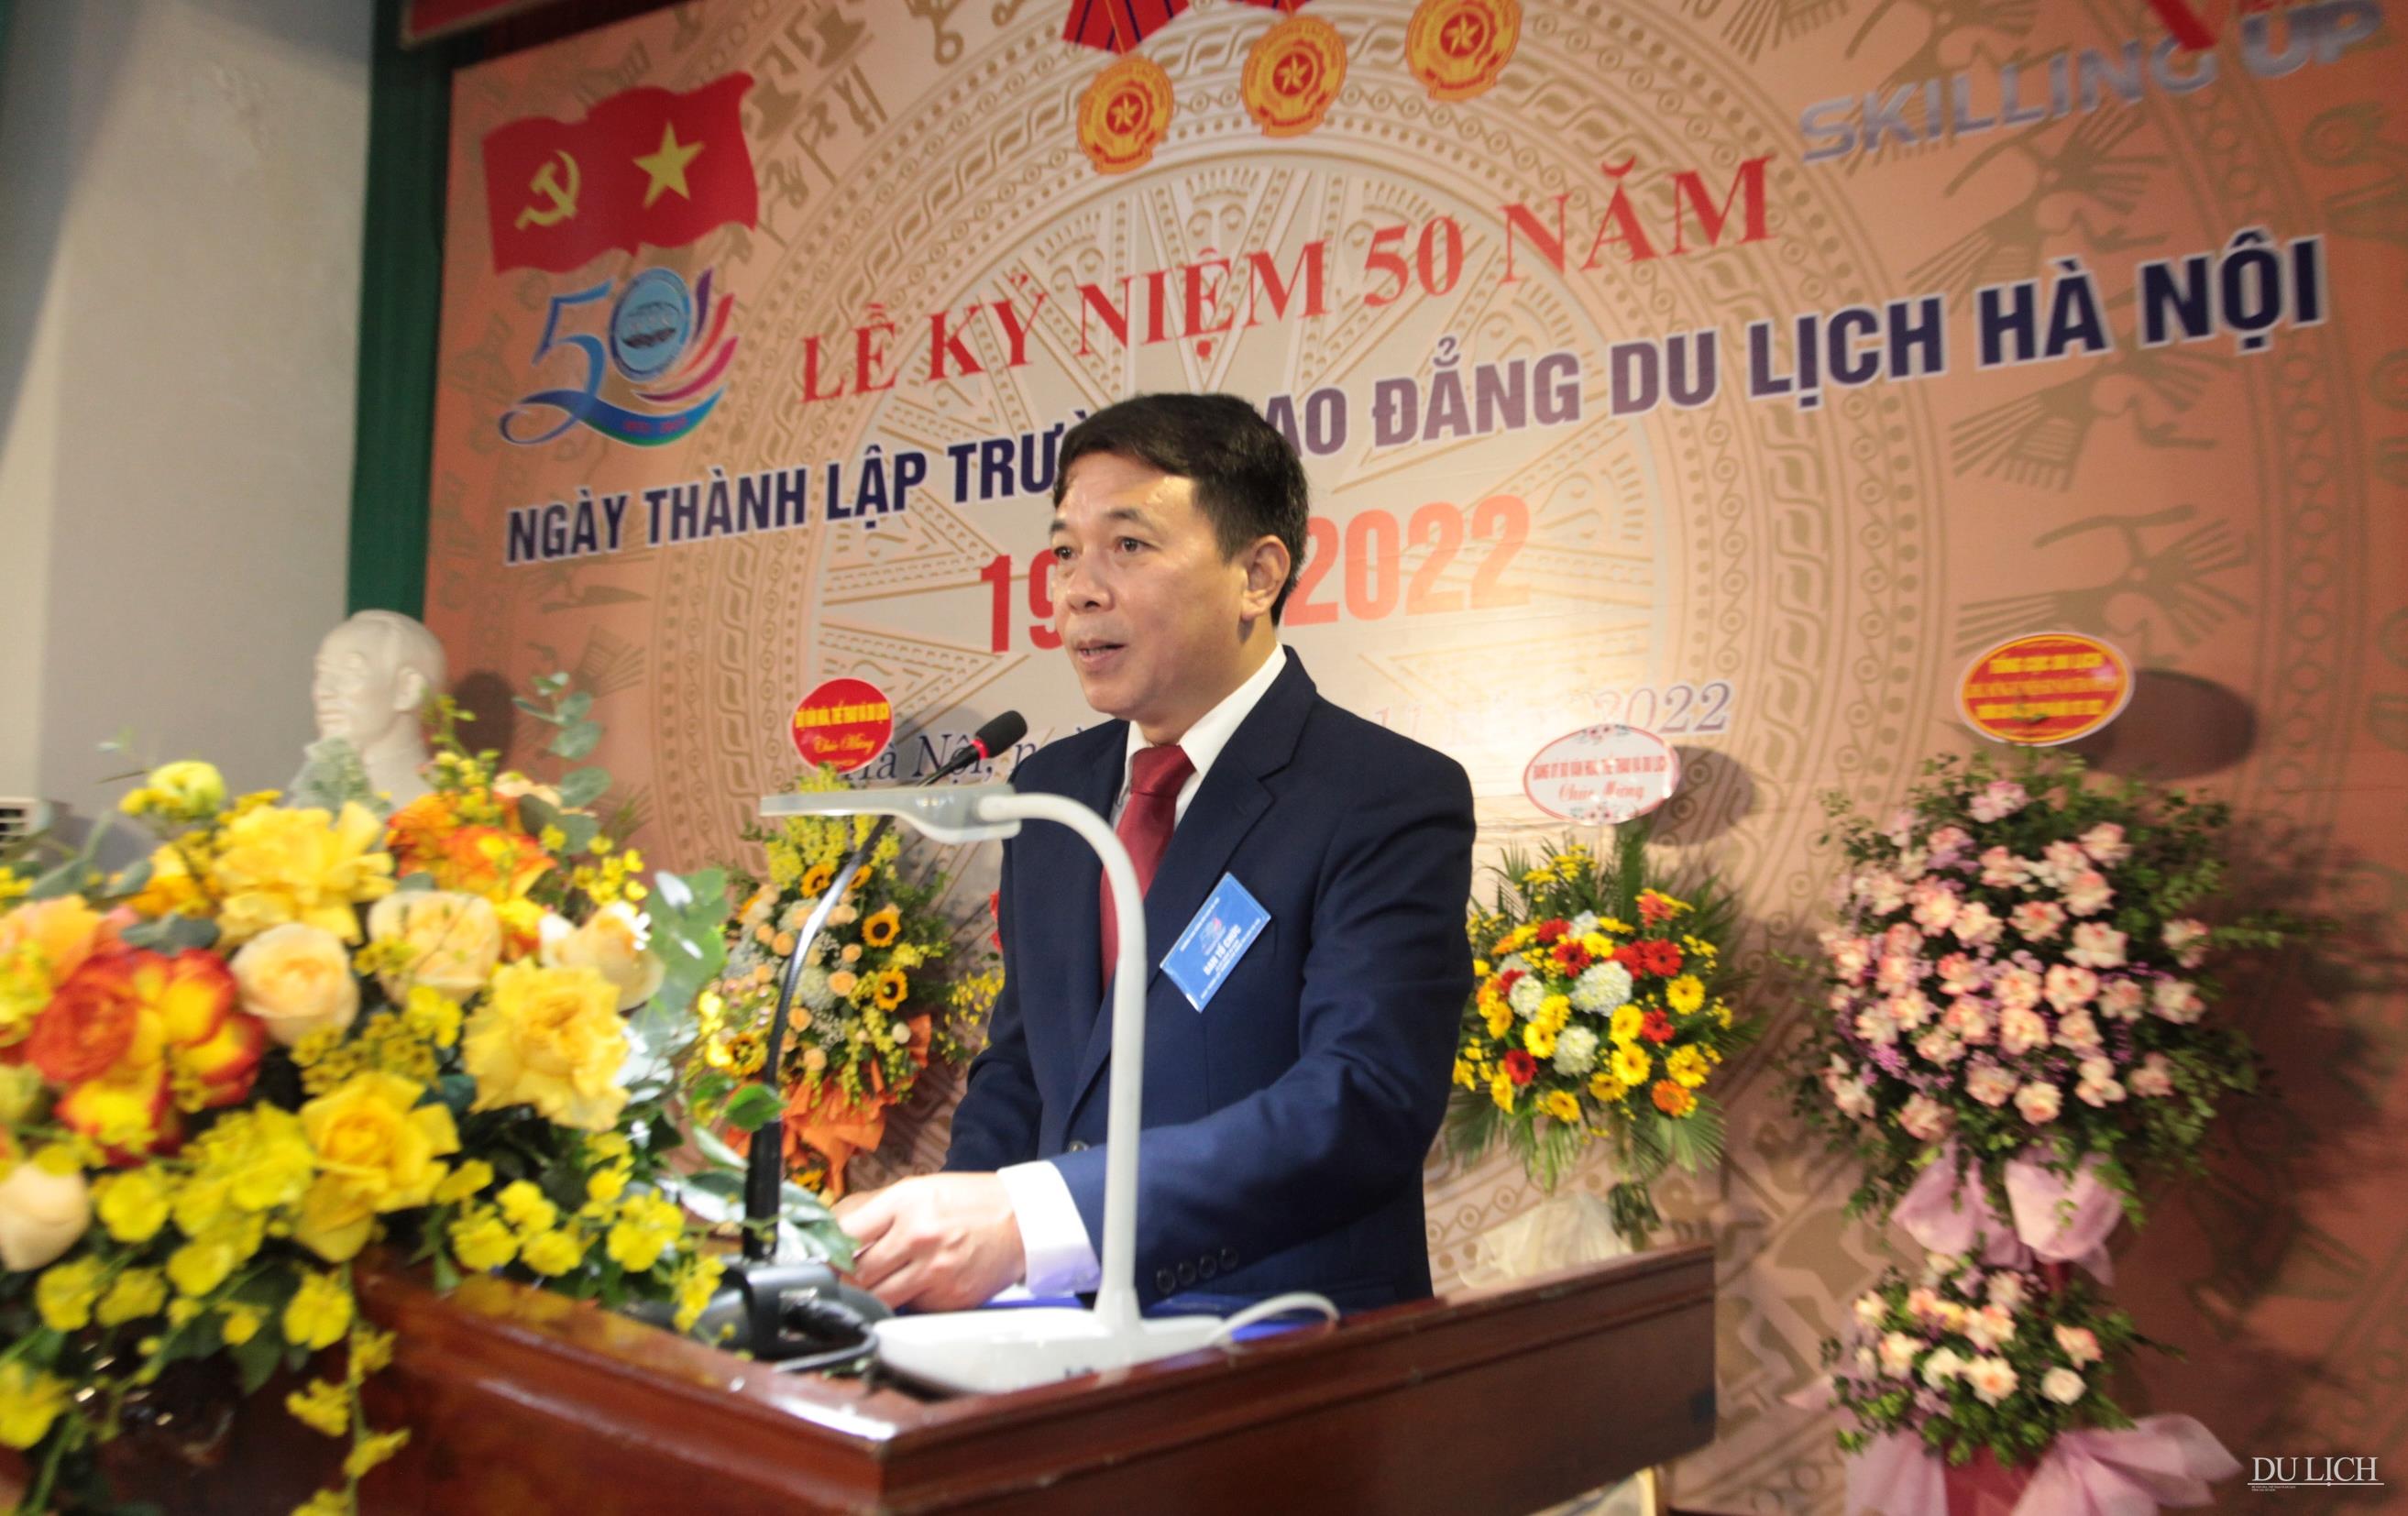 Hiệu trưởng Trường CĐDL Hà Nội Trịnh Cao Khải đọc diễn văn kỷ niệm